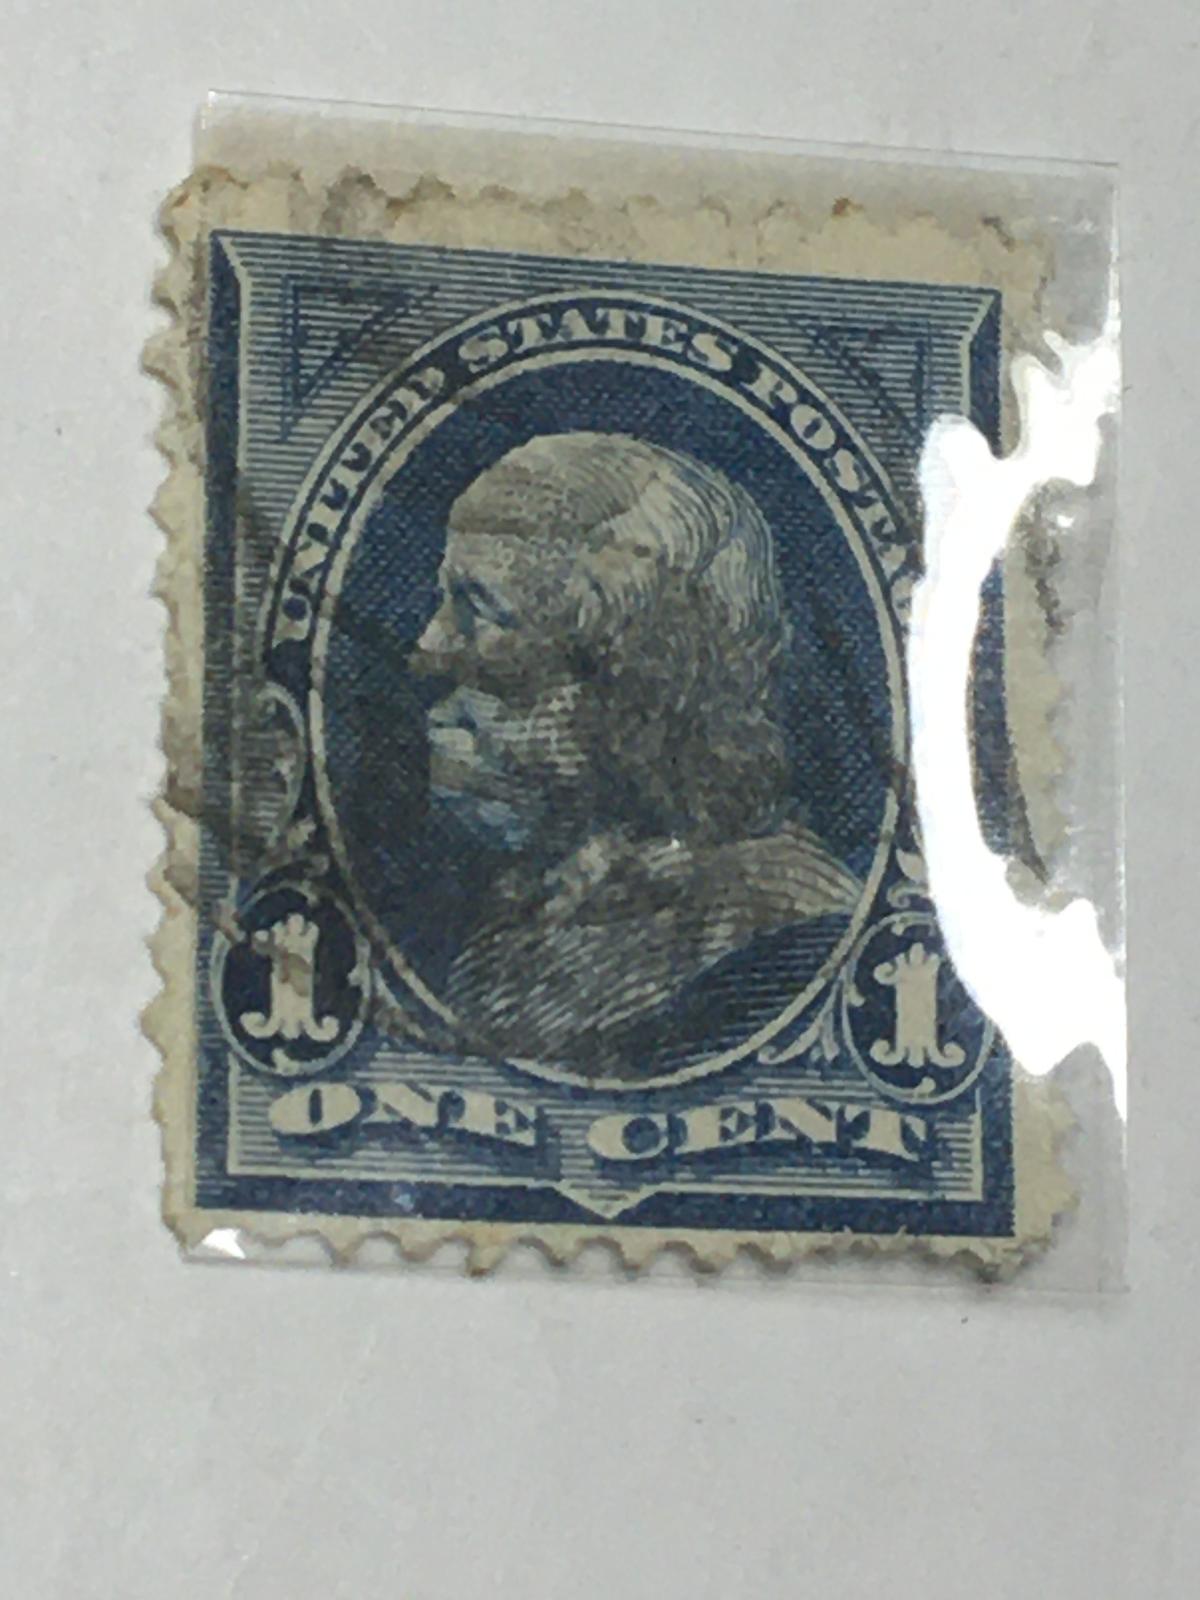 #247 1 Cent U S Stamp 1891-1900